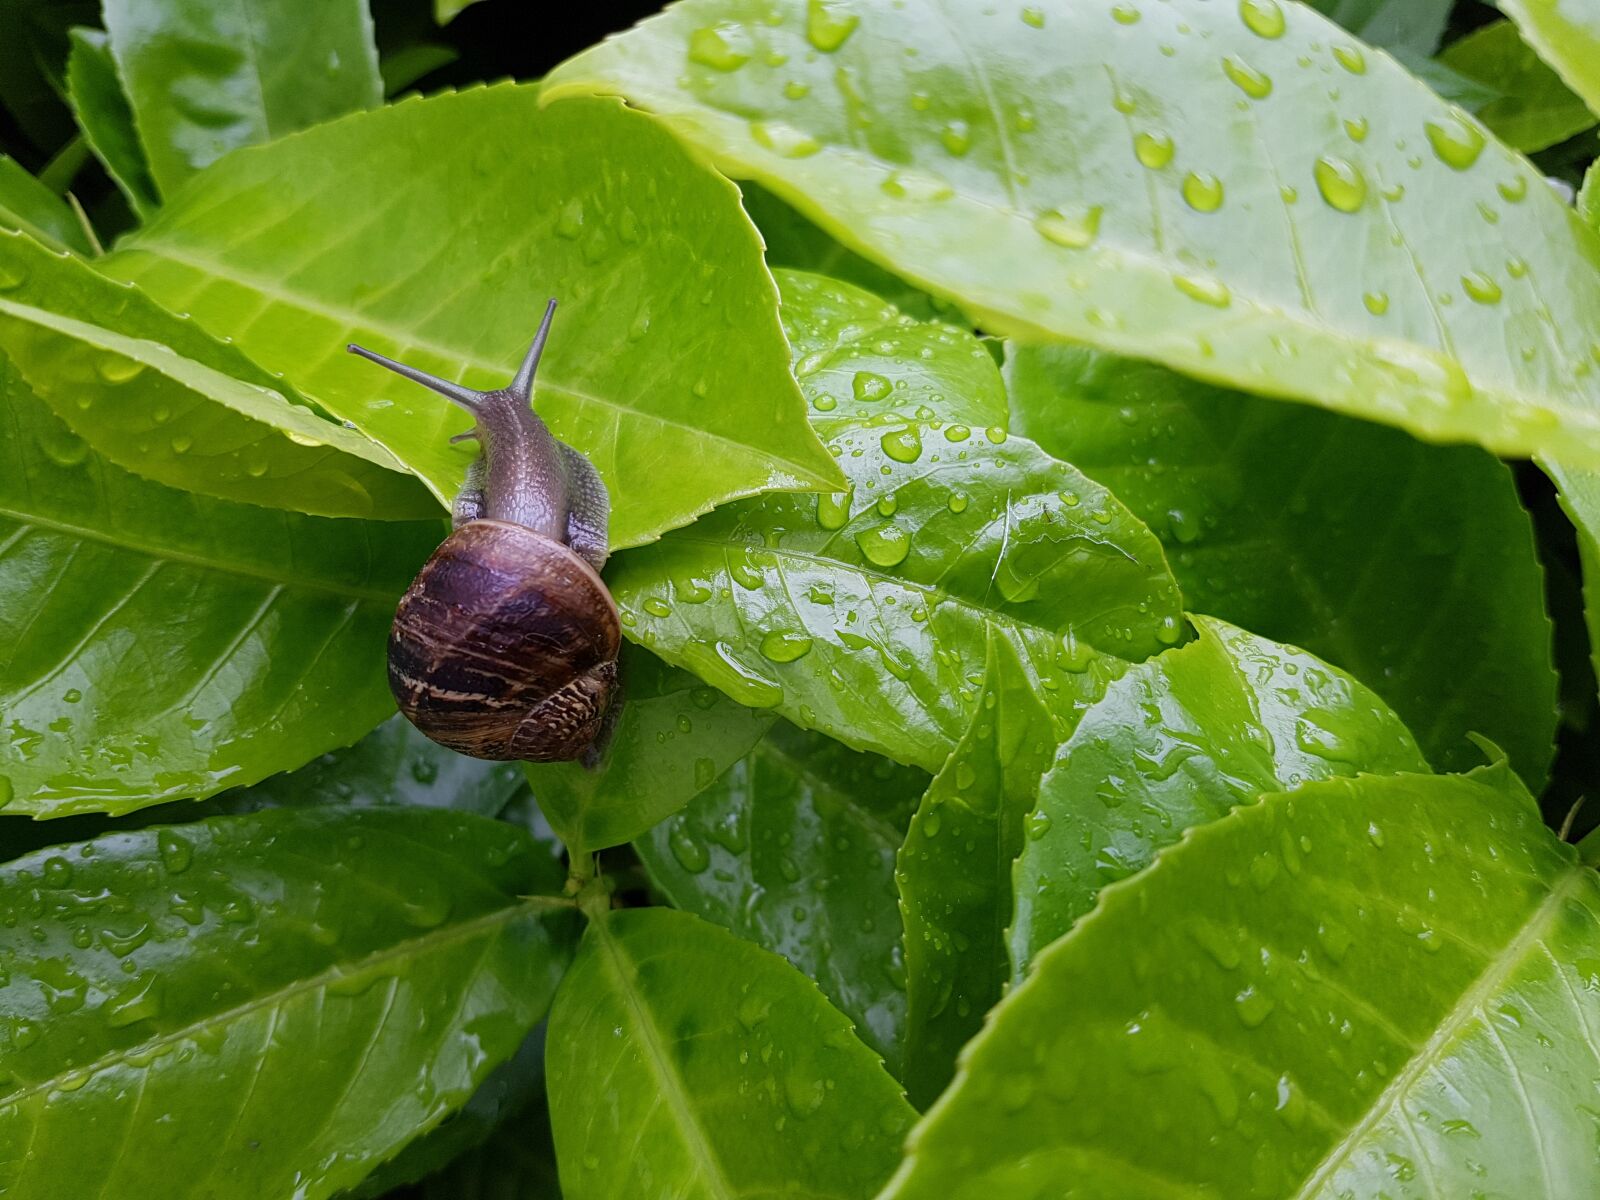 Samsung Galaxy S7 sample photo. Snail, green, garden photography